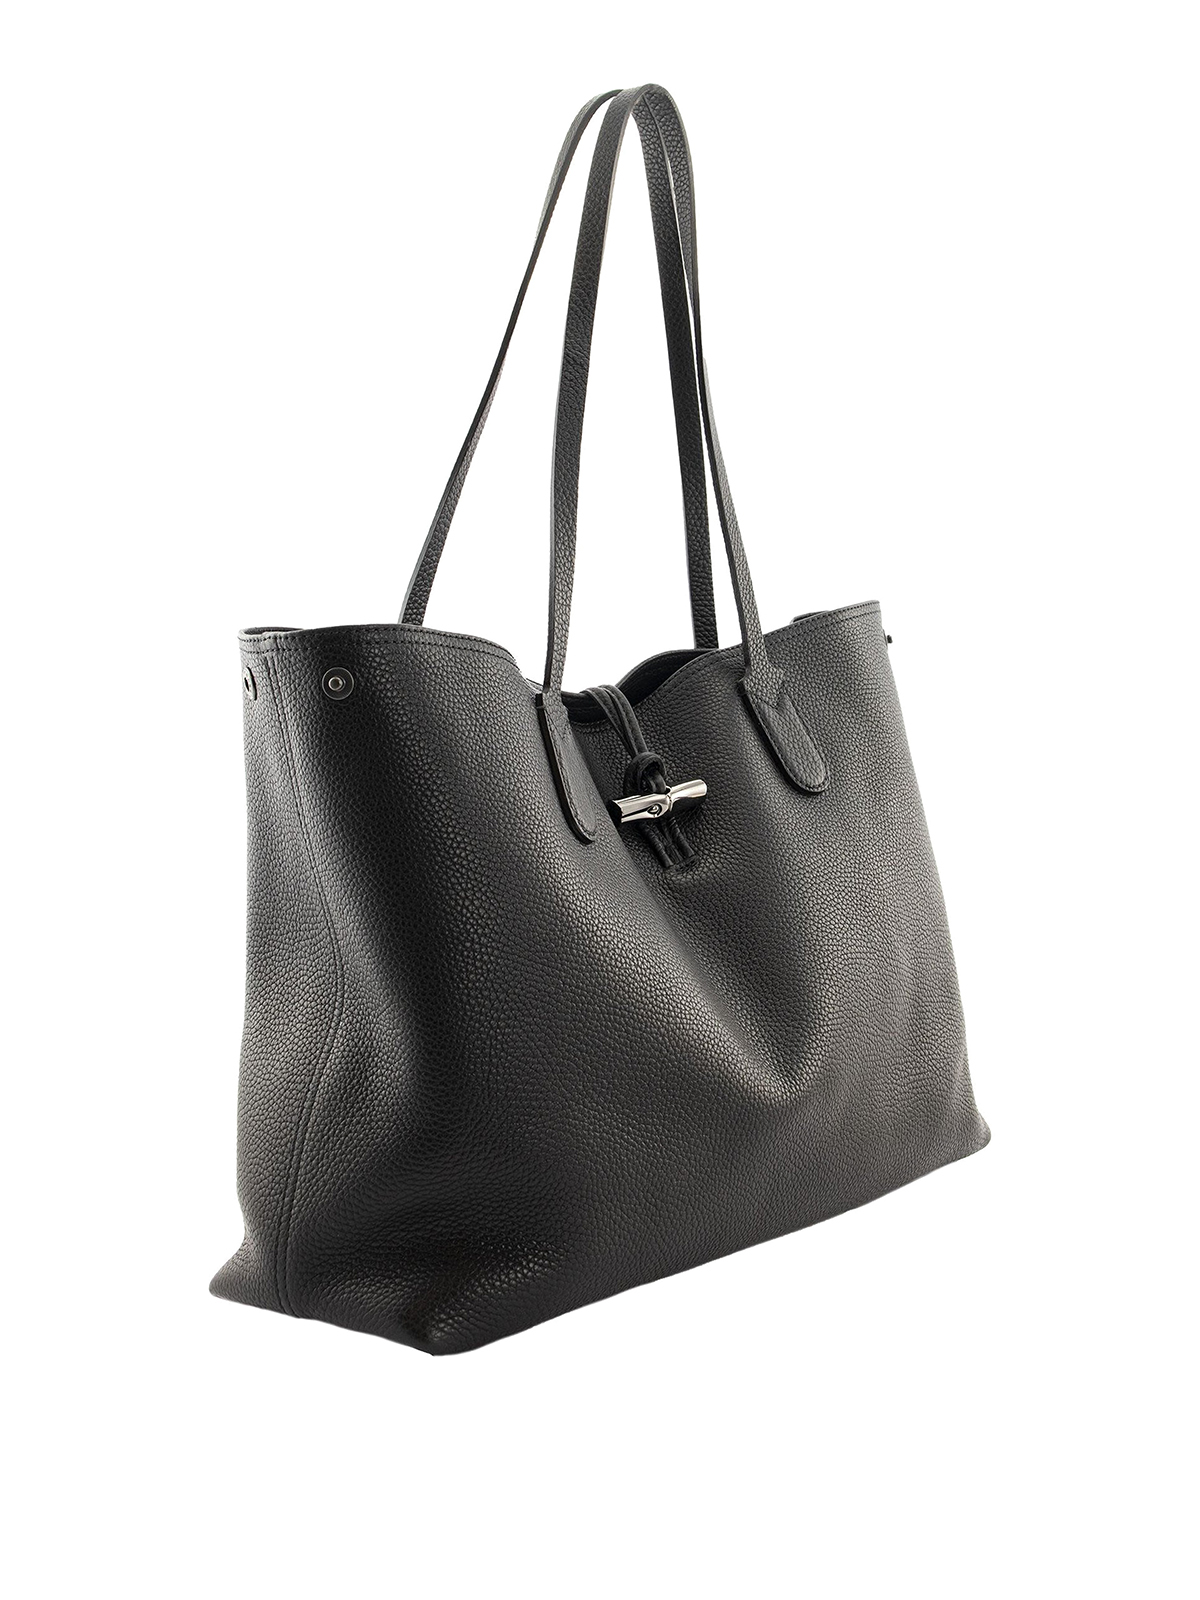 Longchamp Roseau Bag Tote Bags